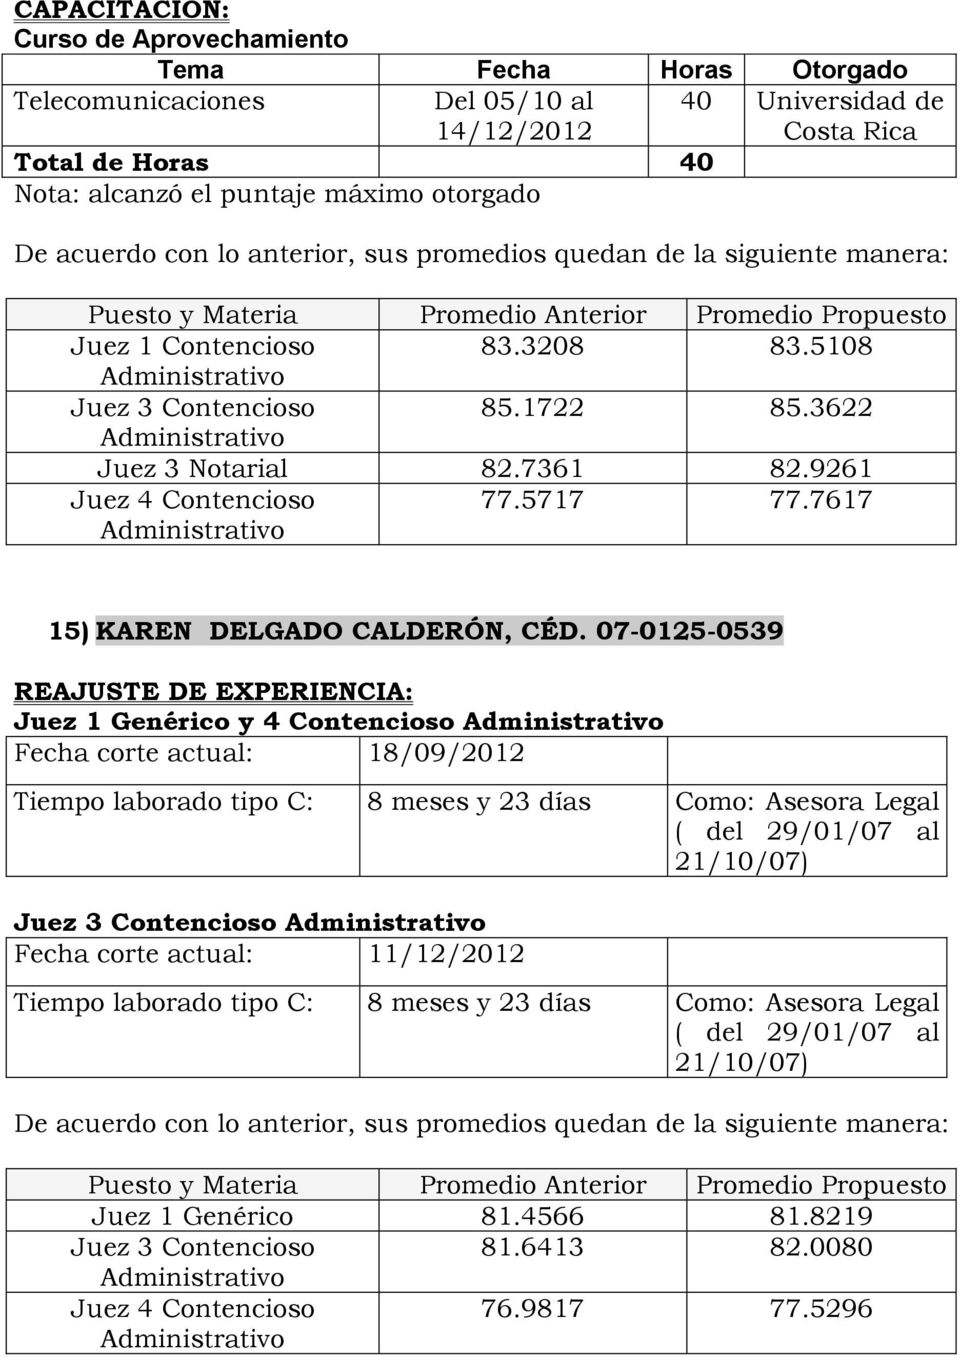 9261 Juez 4 Contencioso Administrativo 77.5717 77.7617 15) KAREN DELGADO CALDERÓN, CÉD.